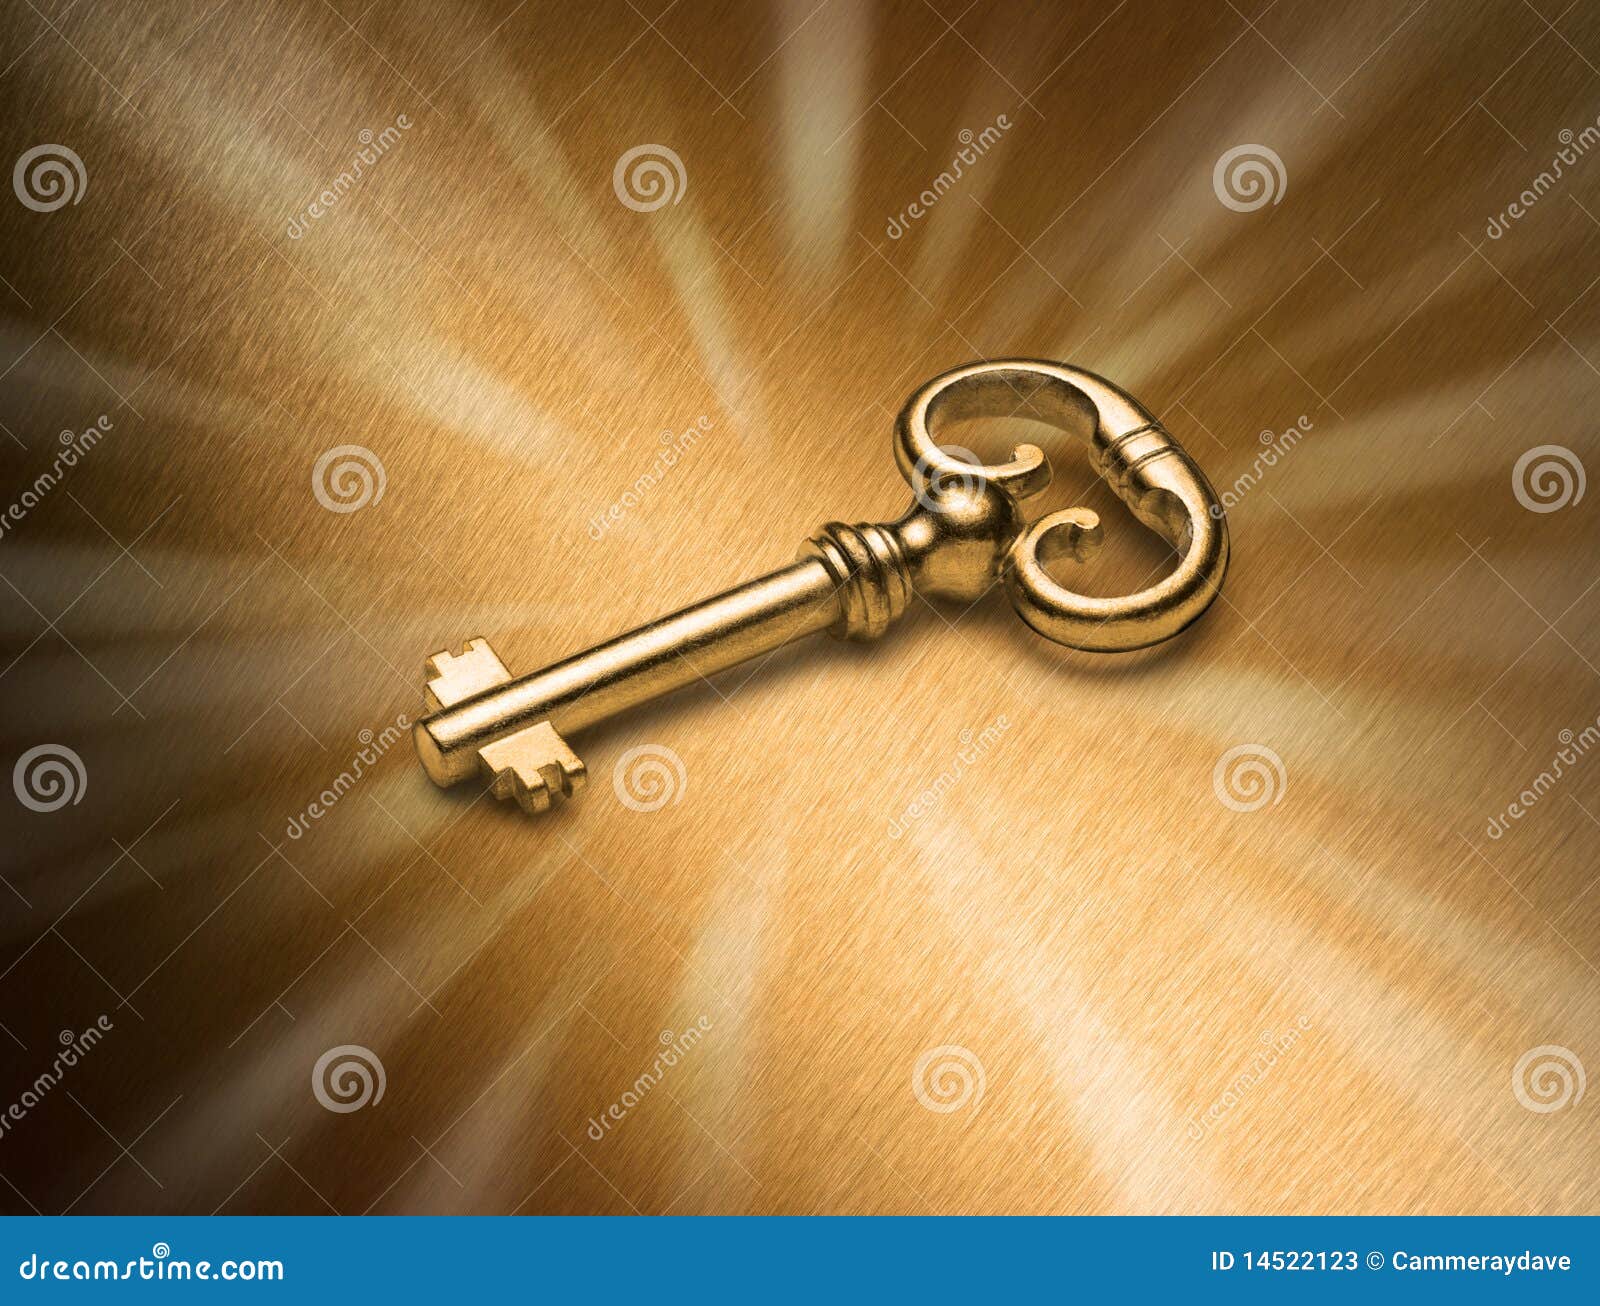 Ключи бывший муж. Золотой ключ. Красивый старинный ключ. Волшебный ключ. Золотой ключик заставка.